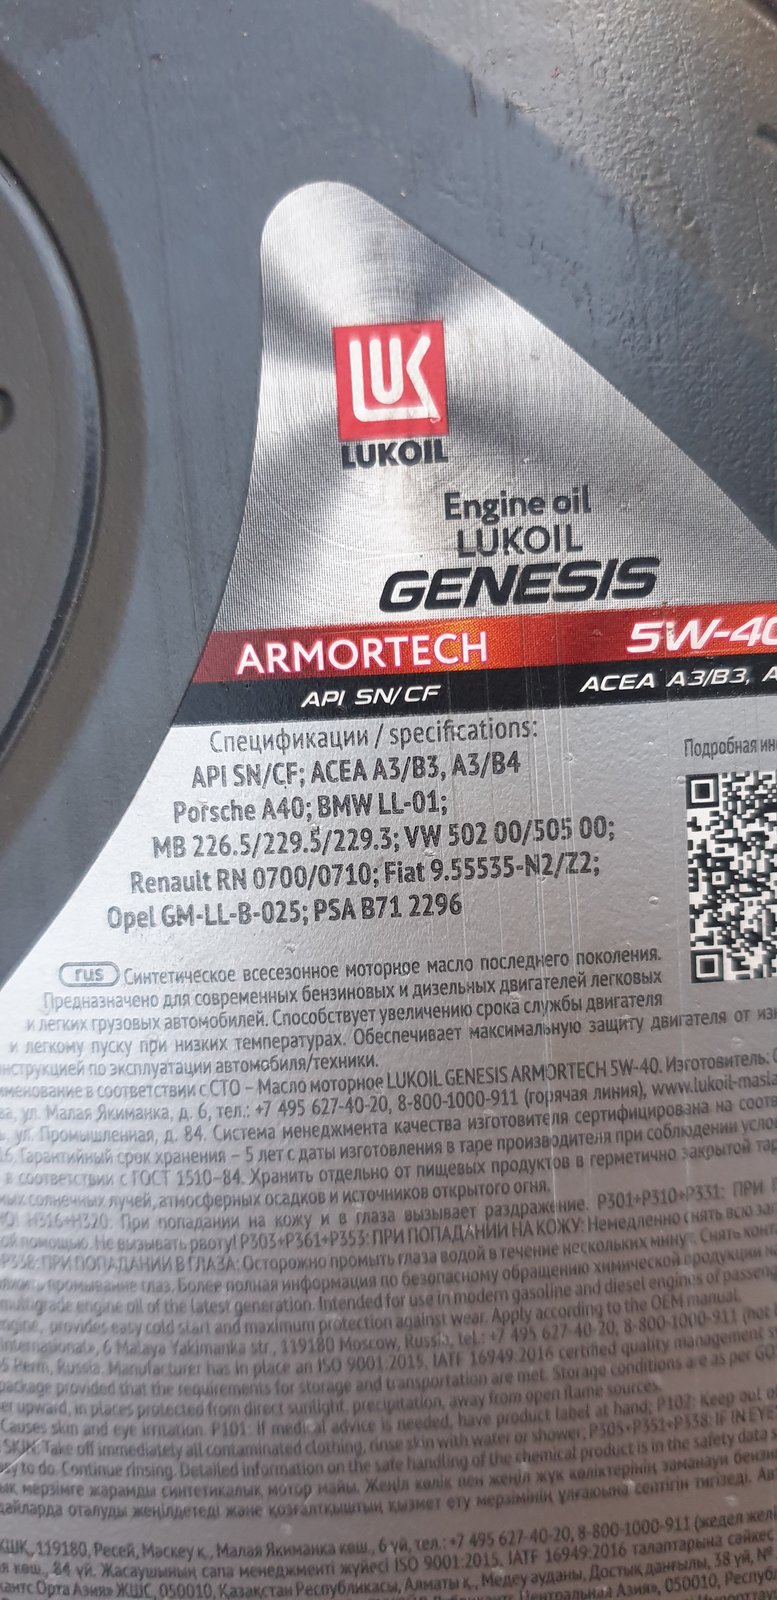 Lukoil Genesis Armortech 5w-40 GM. Лукойл Генезис 5-40 502 505. Лукойл Генезис 5w40 допуск 502-505. Масло Лукойл VW 502 5w40. Допуск масла лукойл 5w40